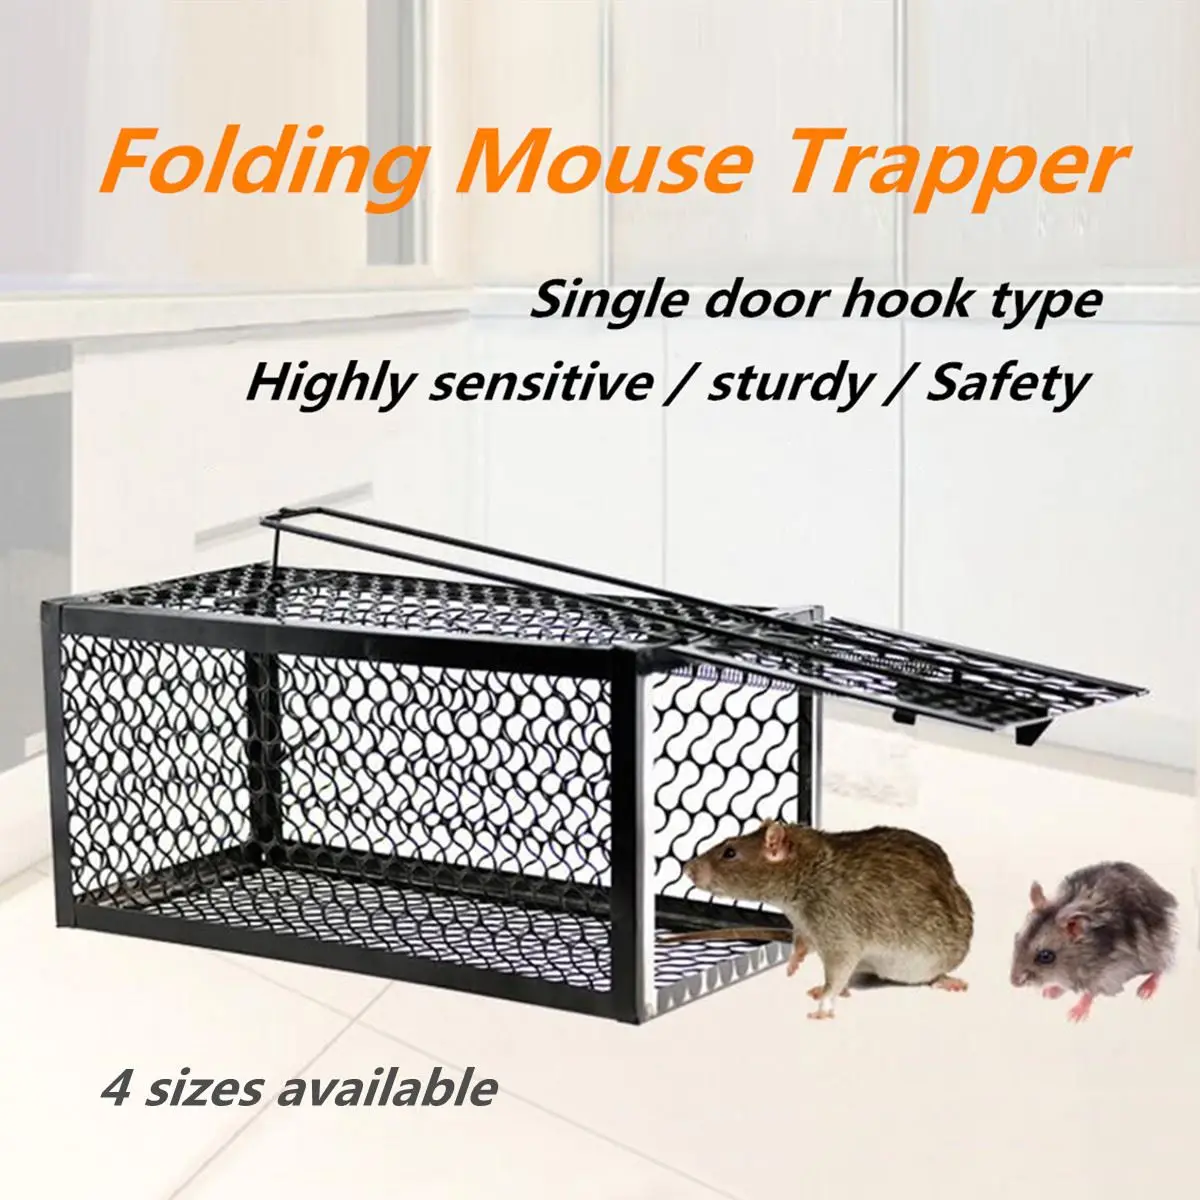 Высокочувствительная Складная ловушка для мыши, металлическая уникальная ловушка для крыс, ловушка для клетки, гуманная безопасная ловушка для мыши, грызунов, для борьбы с вредителями в помещении